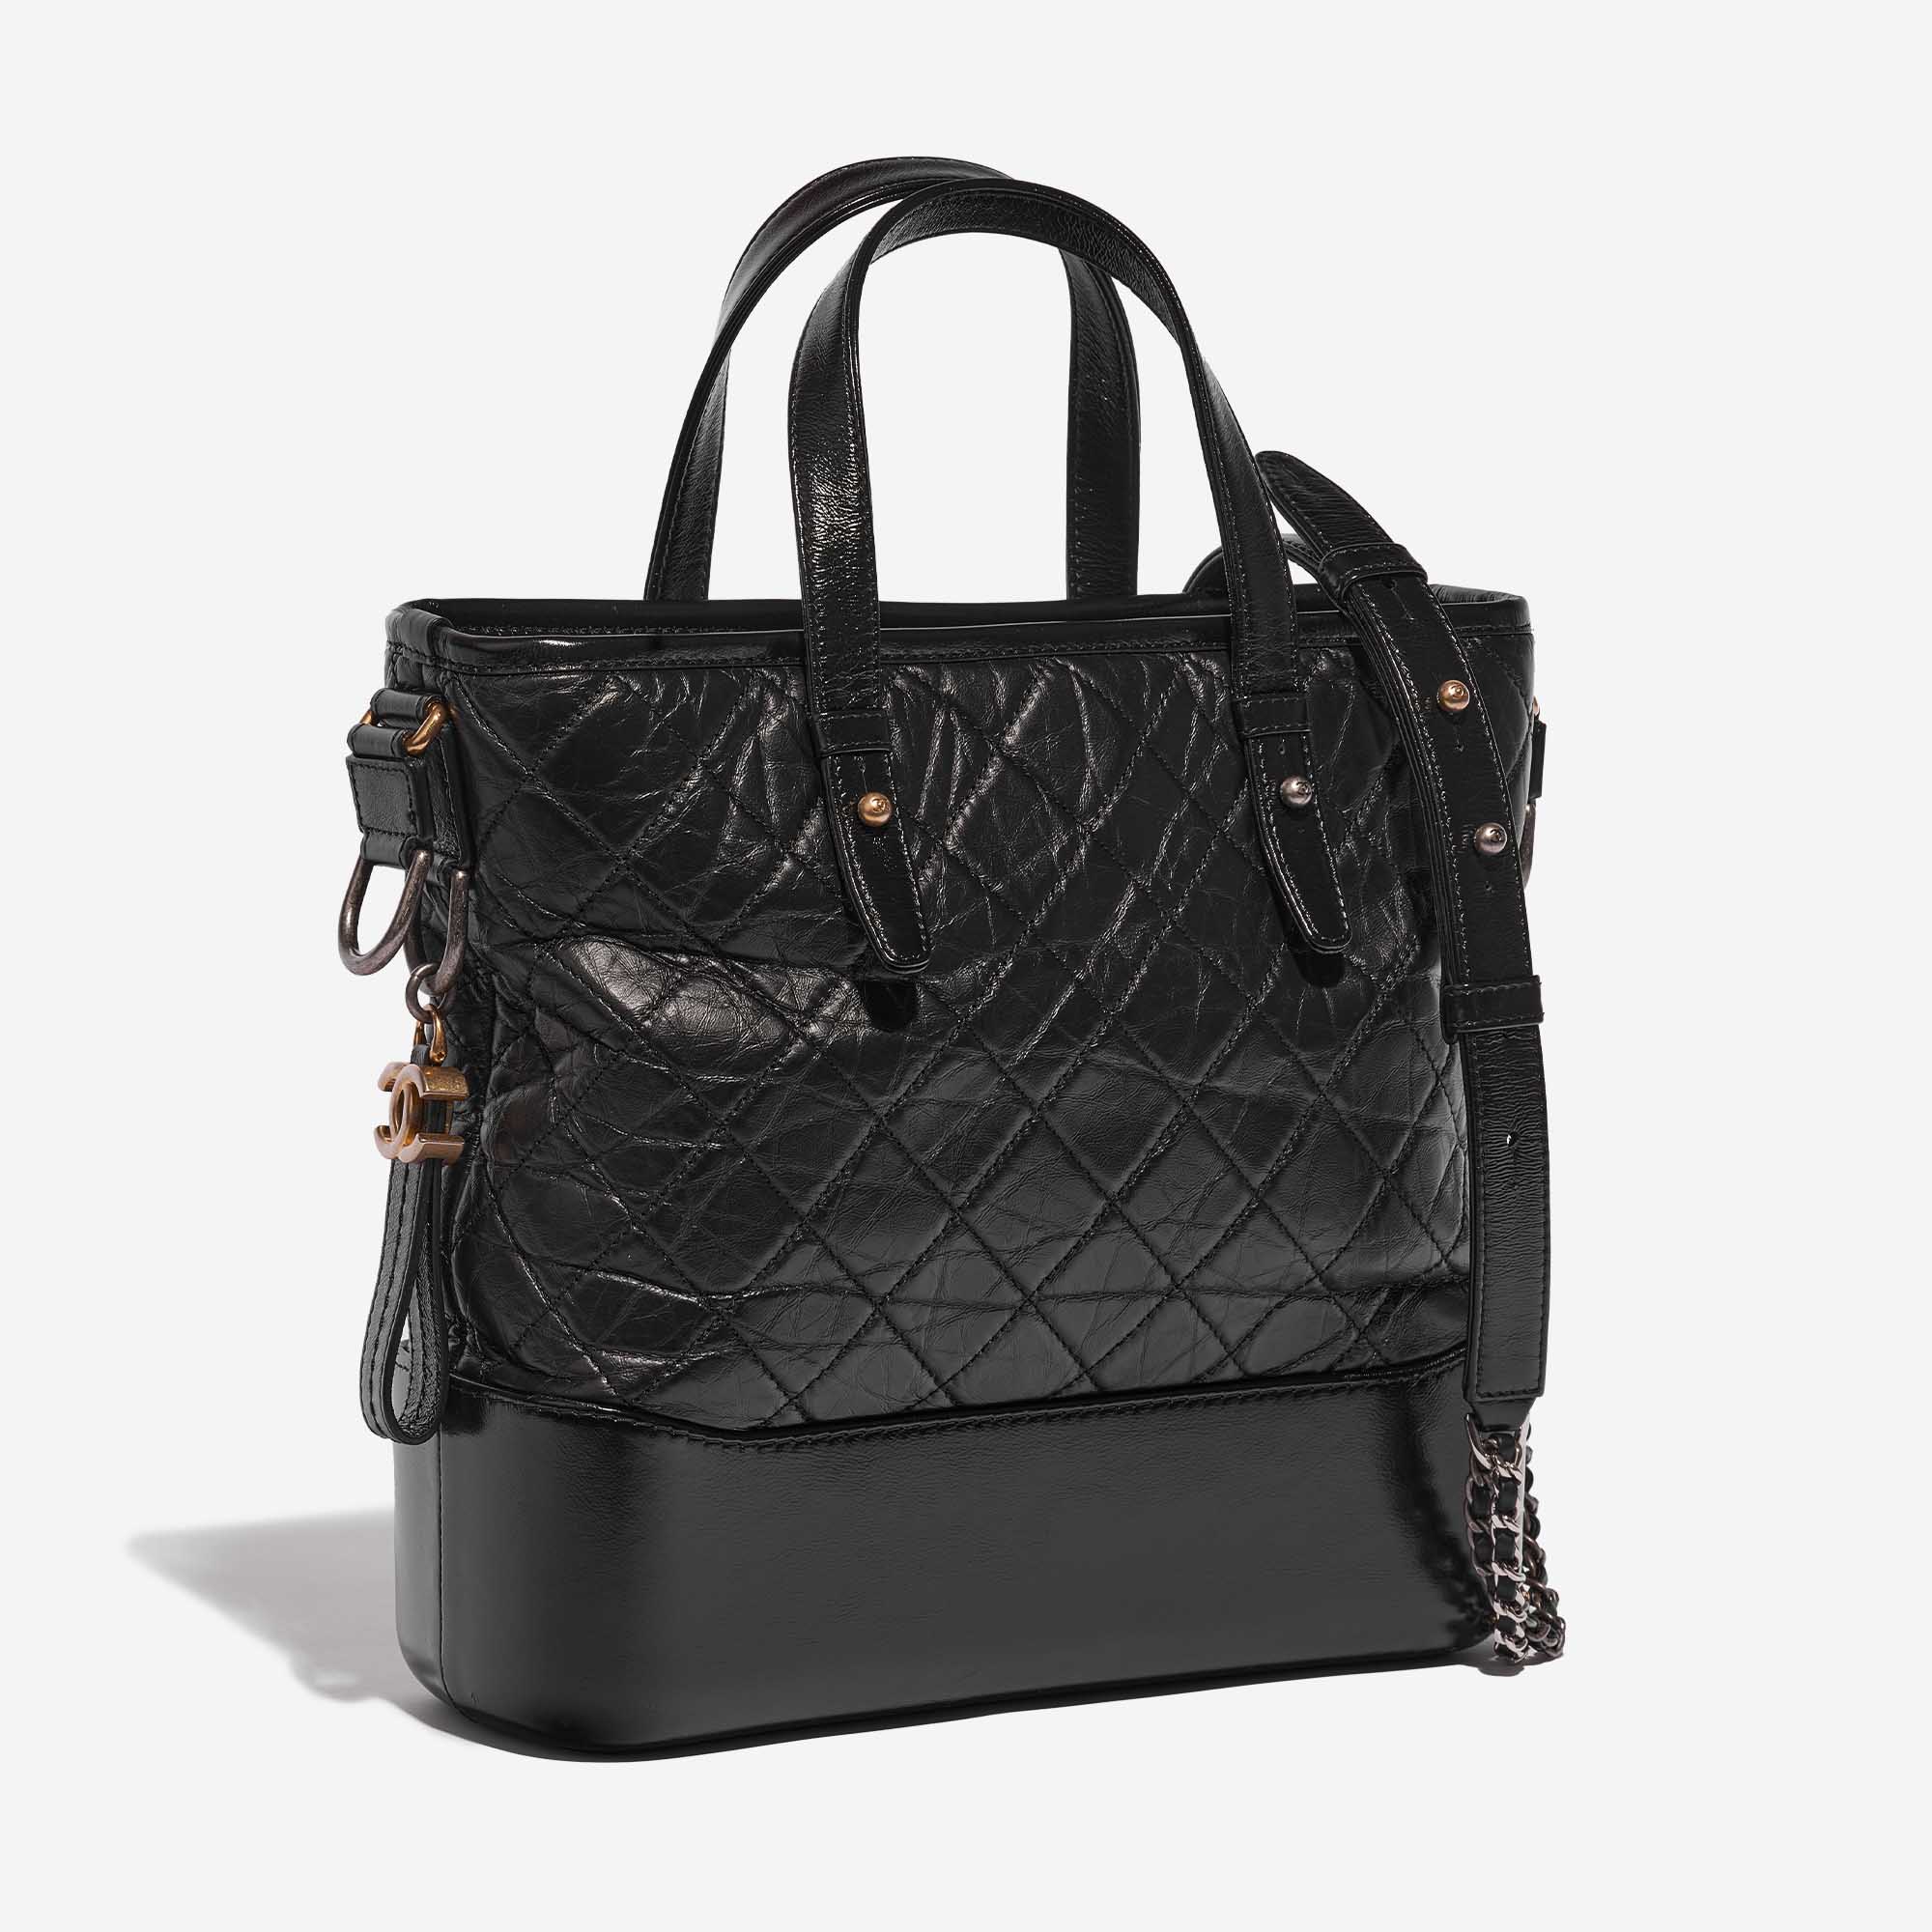 Pre-owned Chanel Tasche Gabrielle Medium Kalbsleder Black Black Side Front | Verkaufen Sie Ihre Designer-Tasche auf Saclab.com